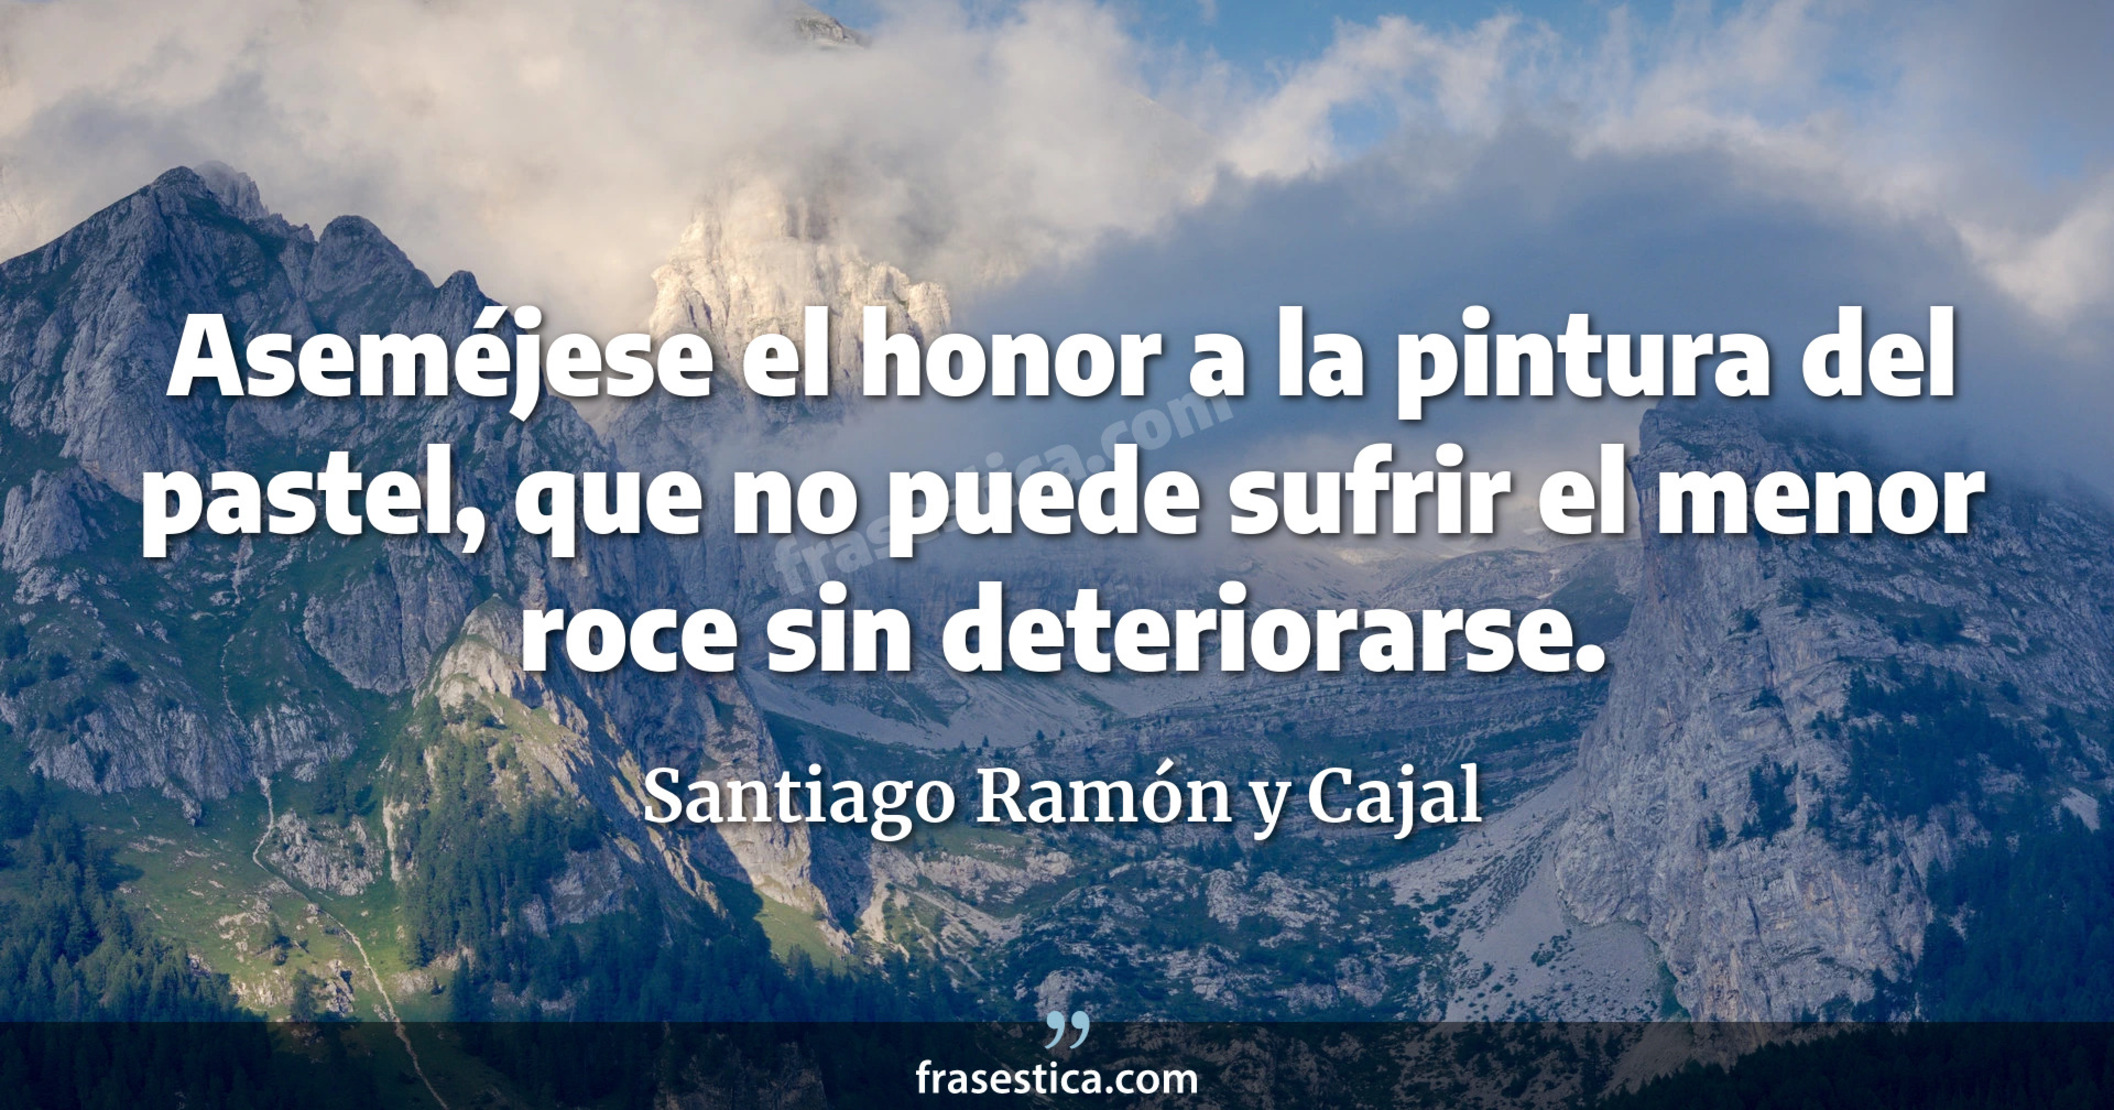 Aseméjese el honor a la pintura del pastel, que no puede sufrir el menor roce sin deteriorarse. - Santiago Ramón y Cajal